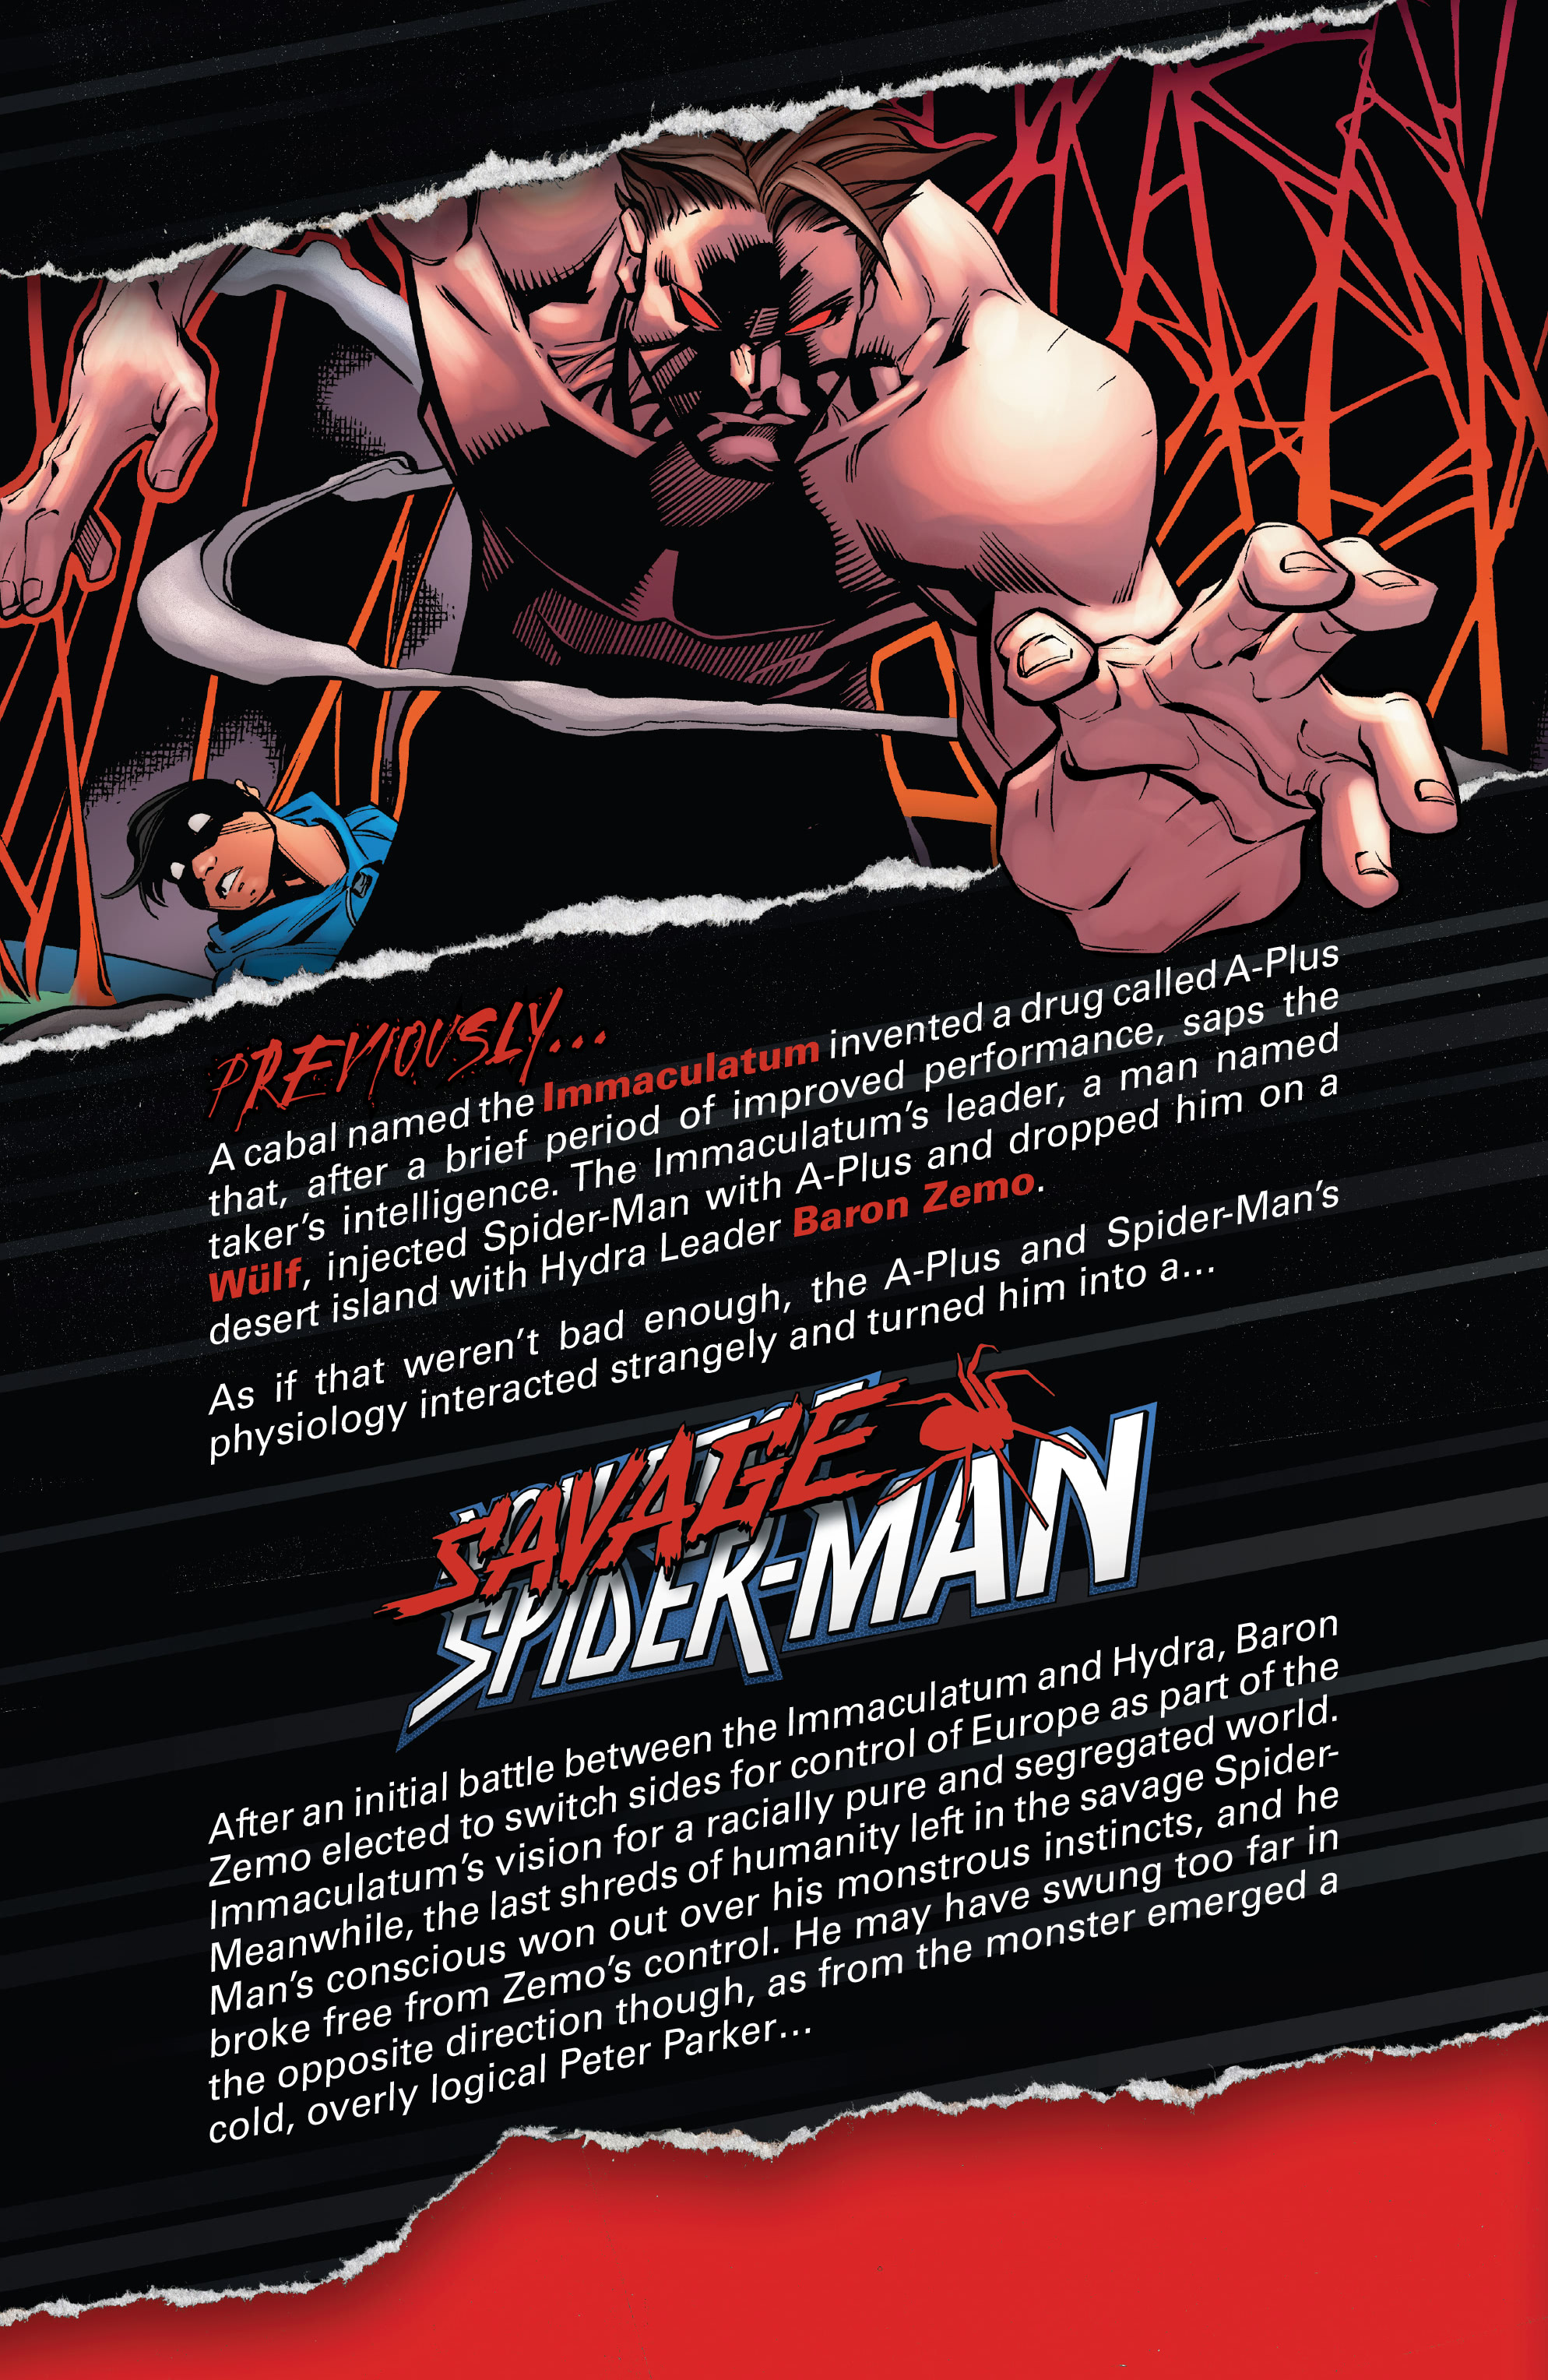 Read online Savage Spider-Man comic -  Issue #4 - 3